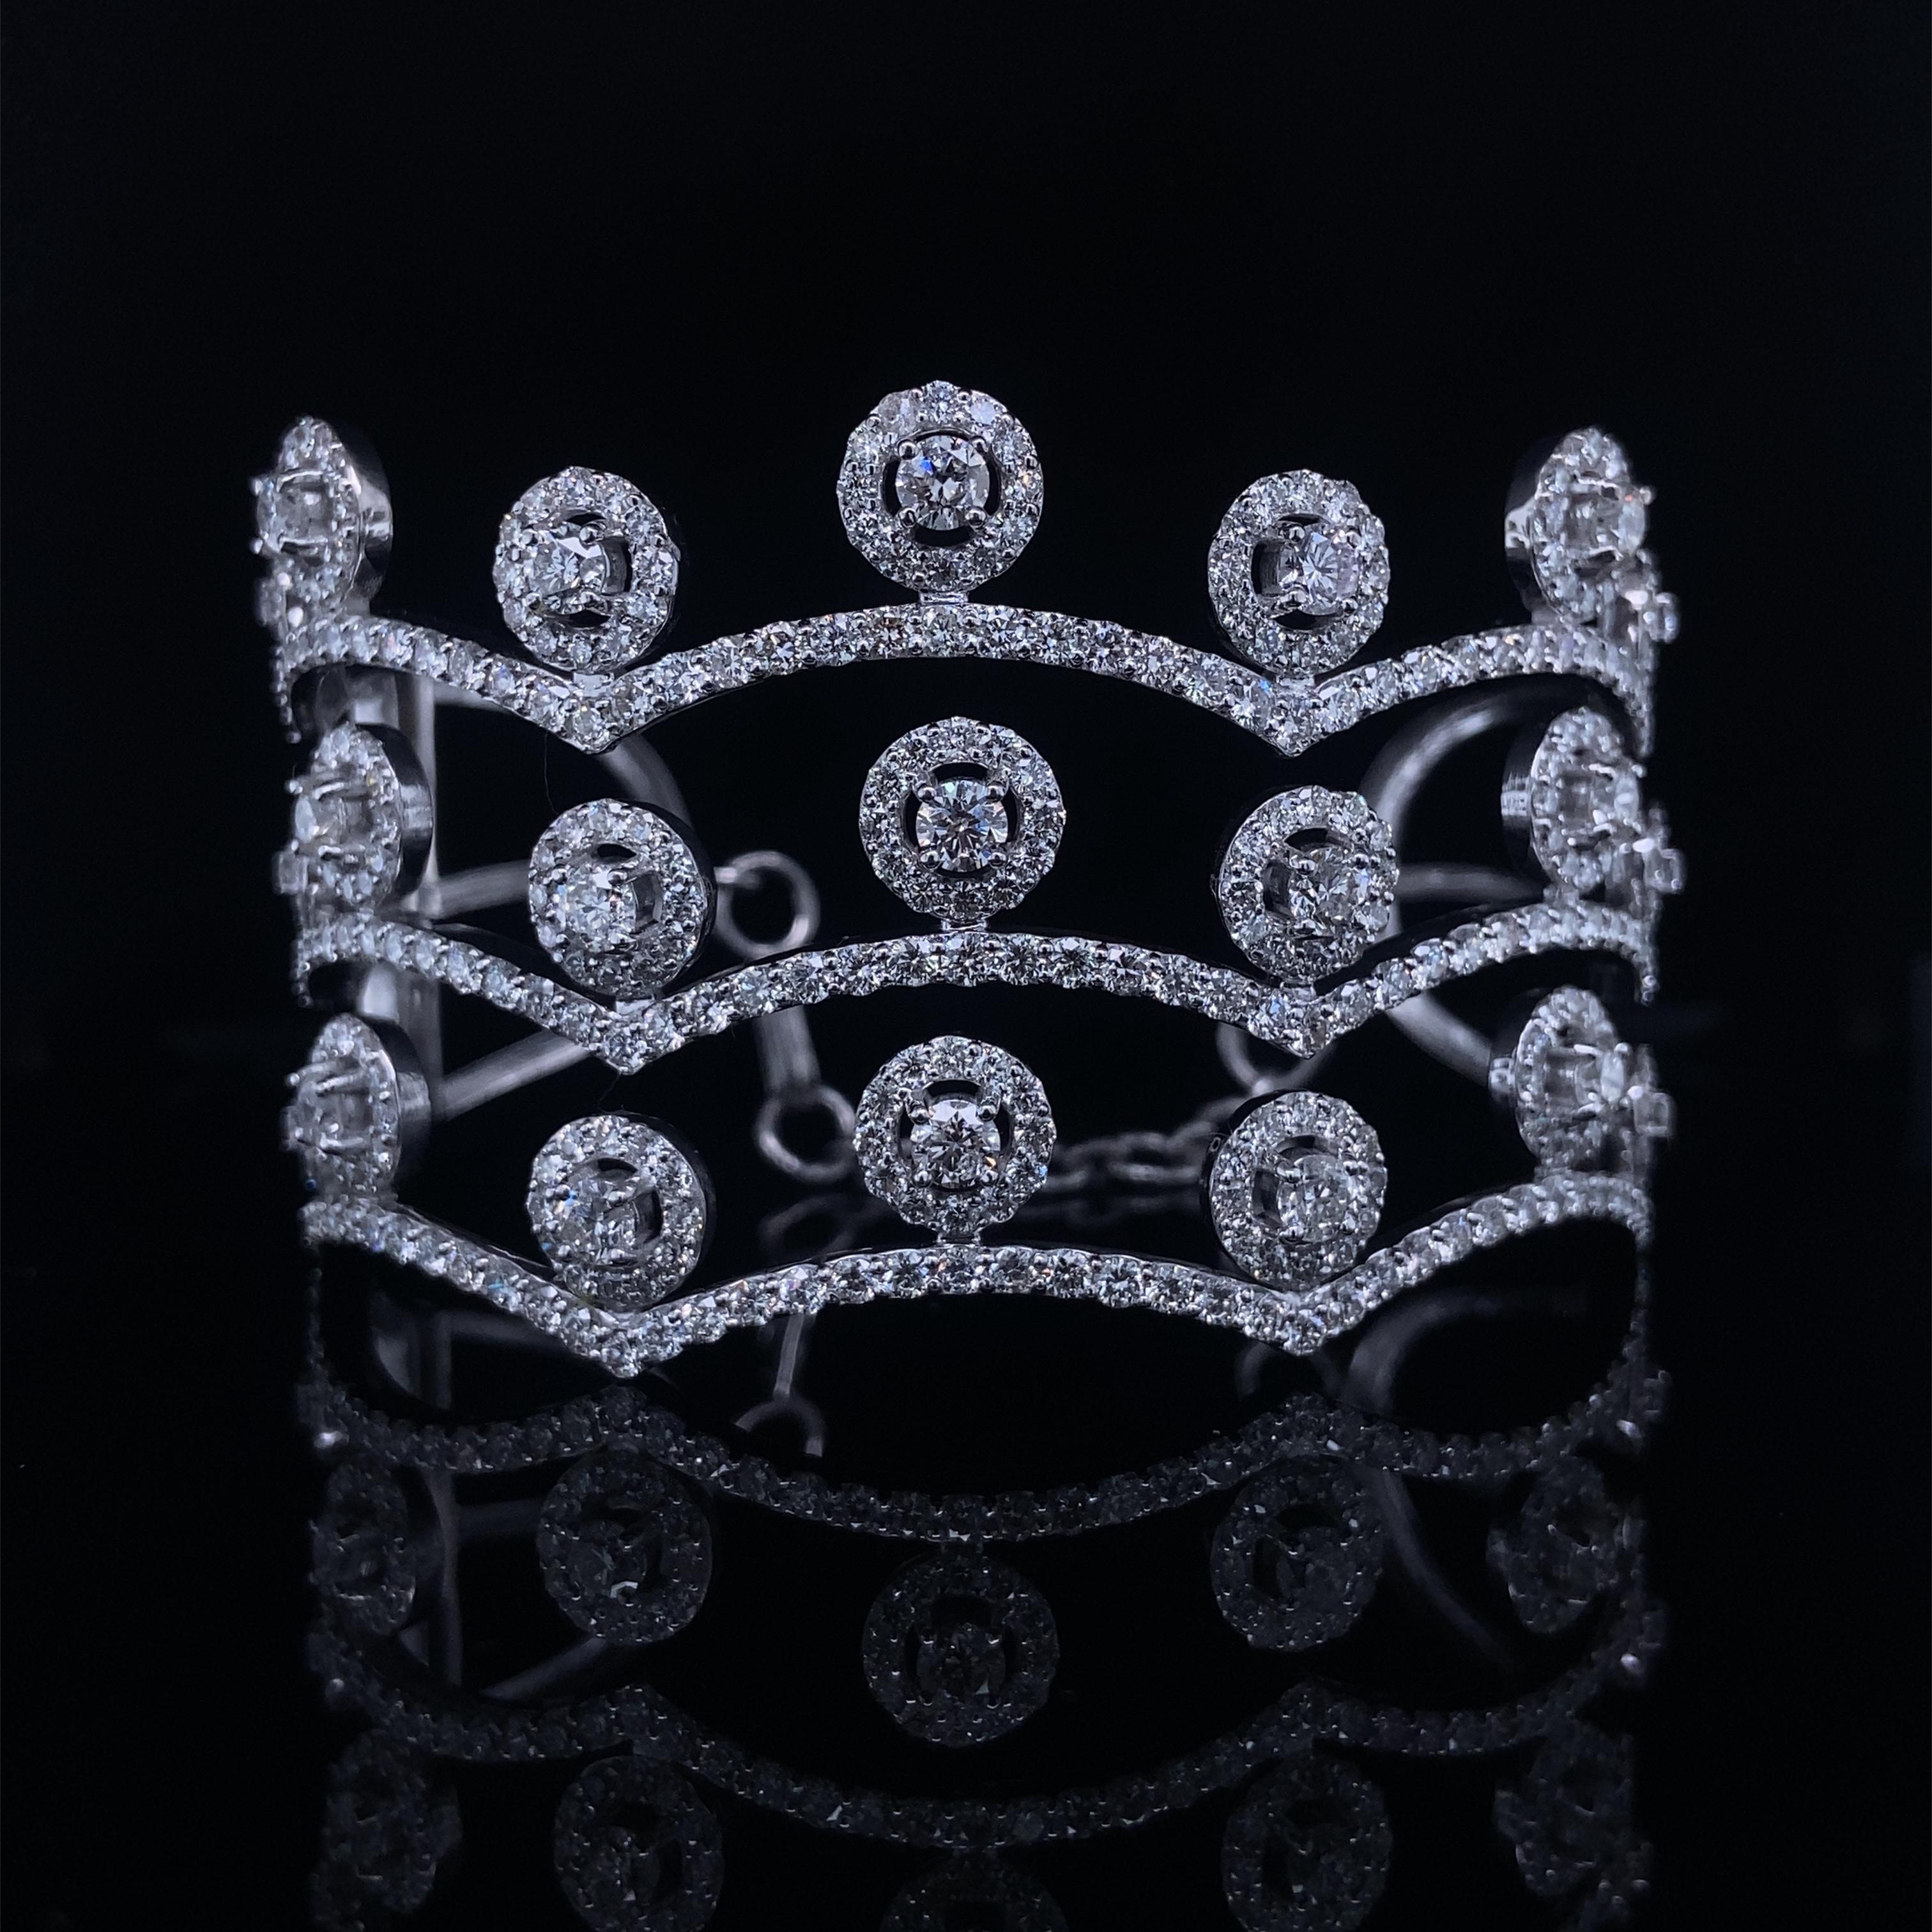 Das Crown Shaped Diamond Cuff Bracelet ist ein exquisites Schmuckstück, das mit Eleganz gefertigt wurde. Das atemberaubende Kronendesign ist sorgfältig mit funkelnden Diamanten besetzt und verleiht ihm ein königliches und luxuriöses Aussehen. Das